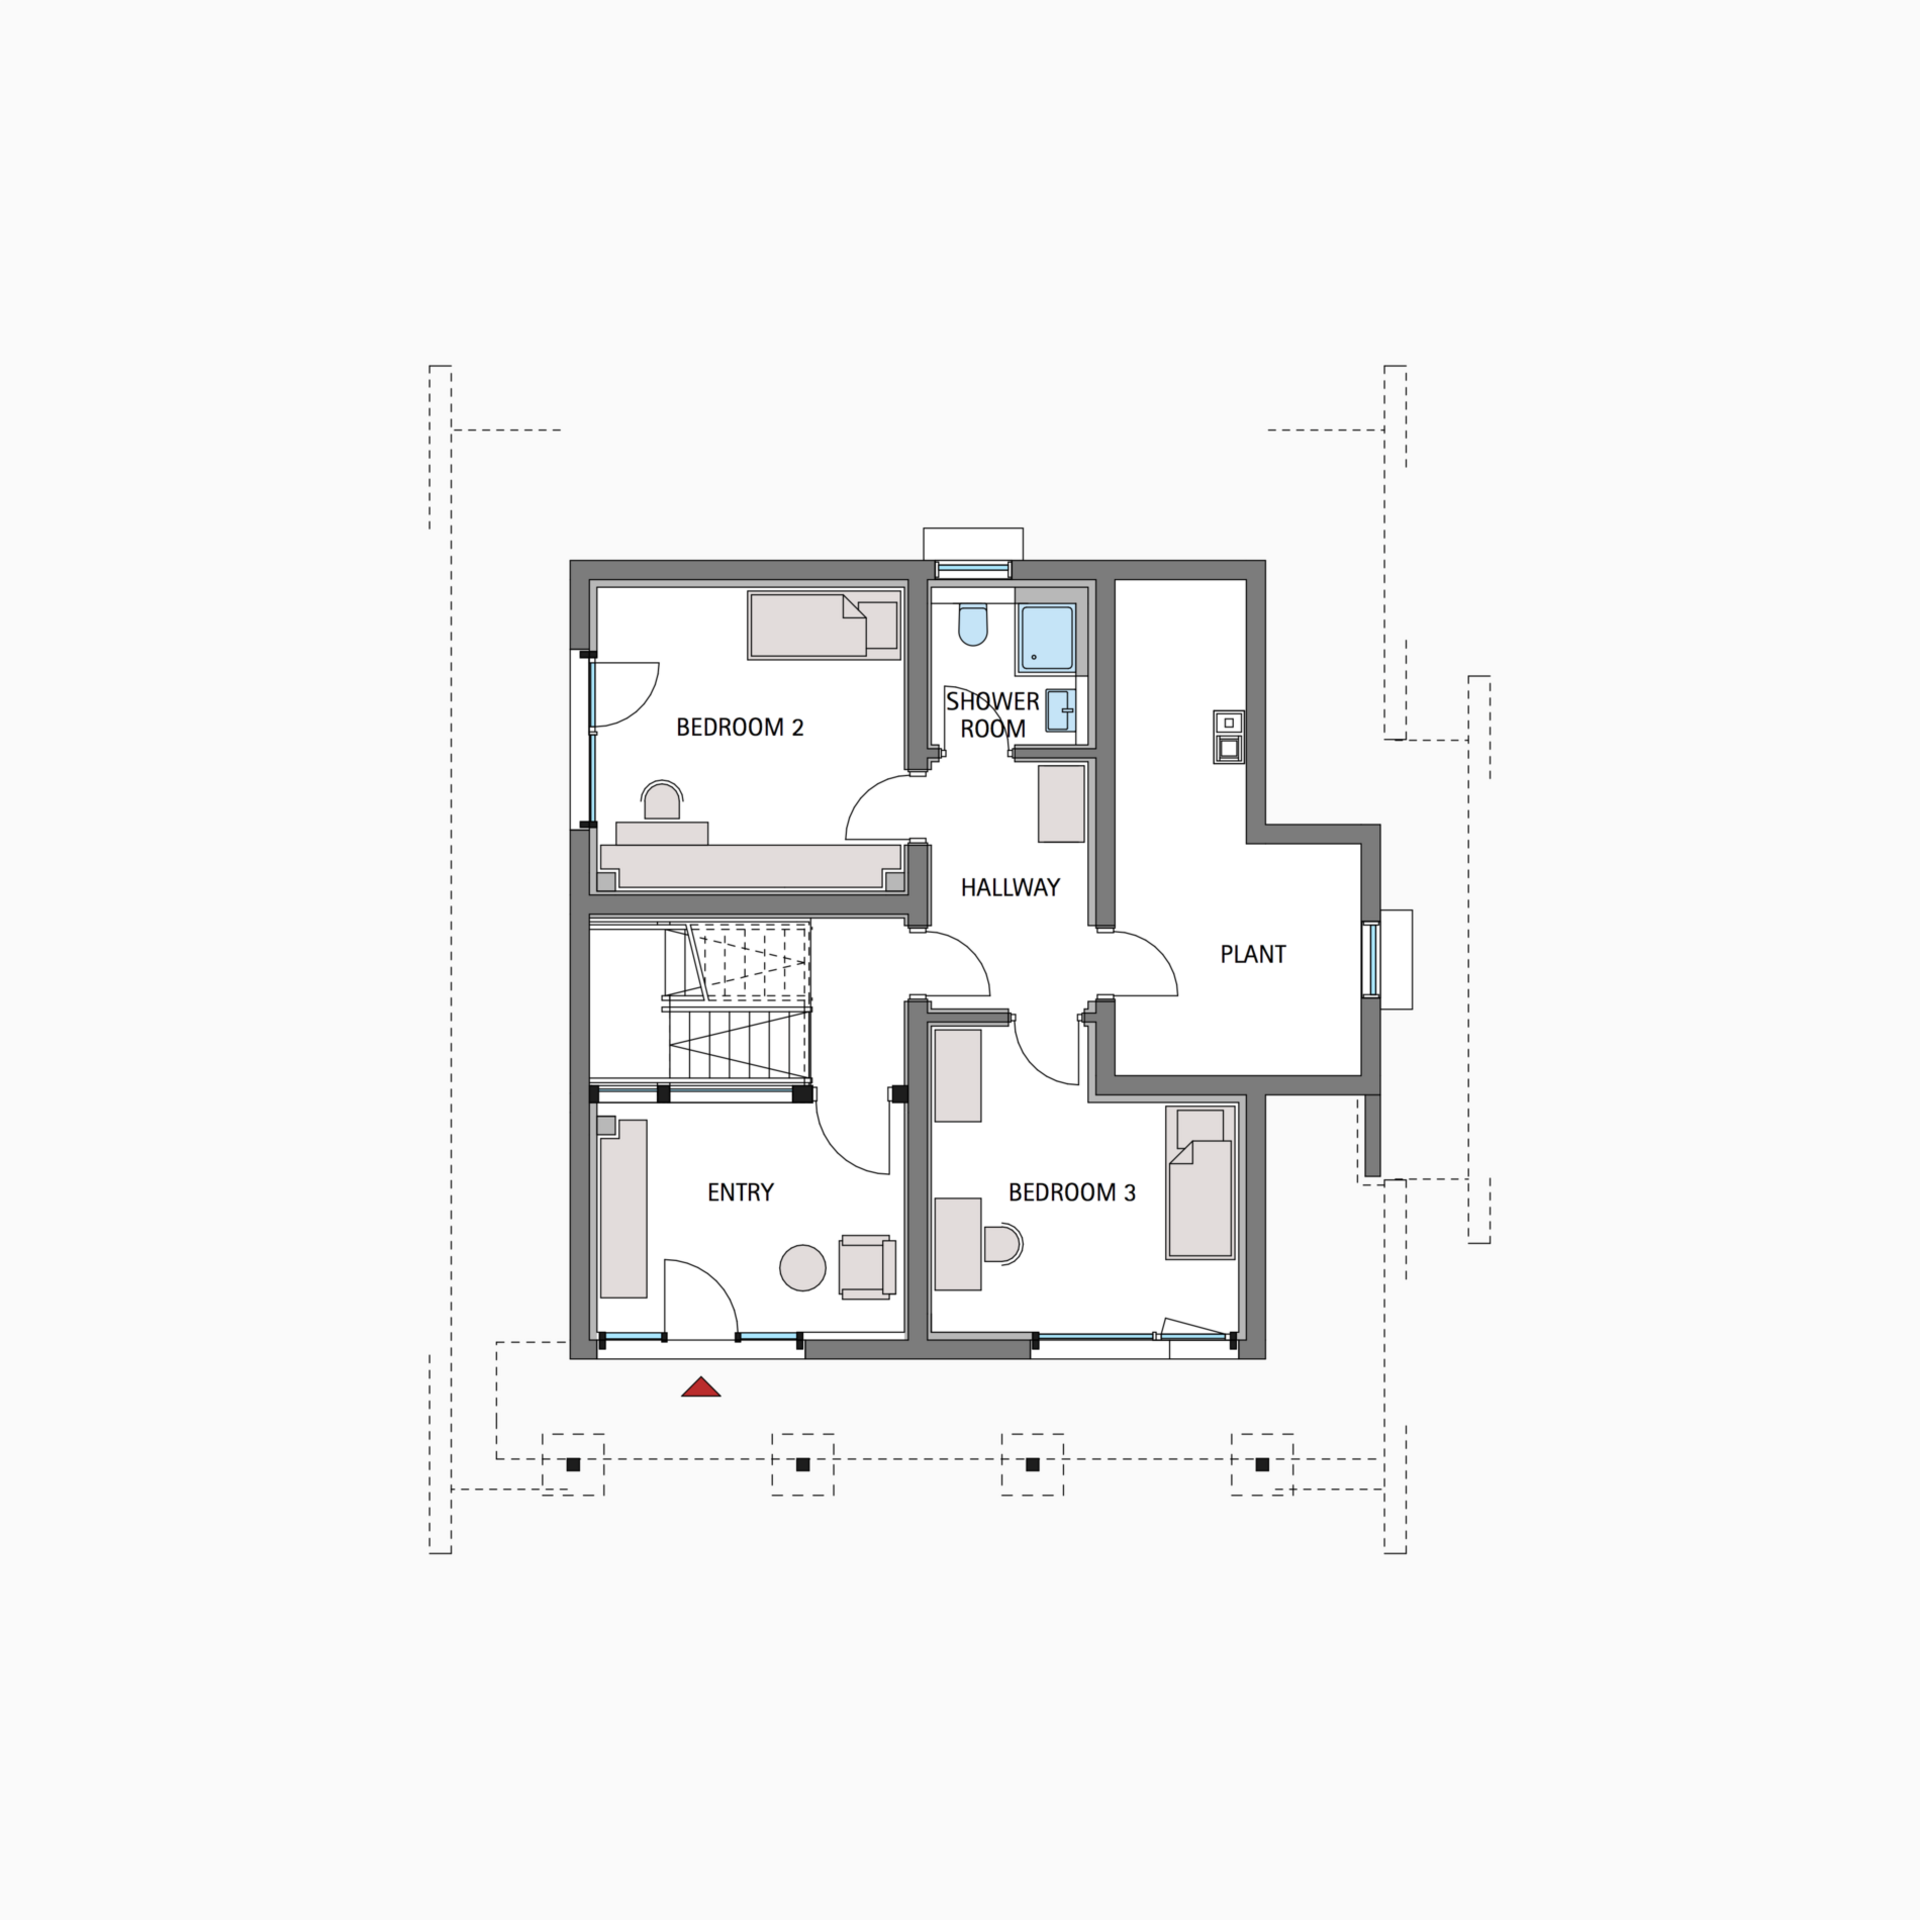 HUF house floor plan basement ART 3